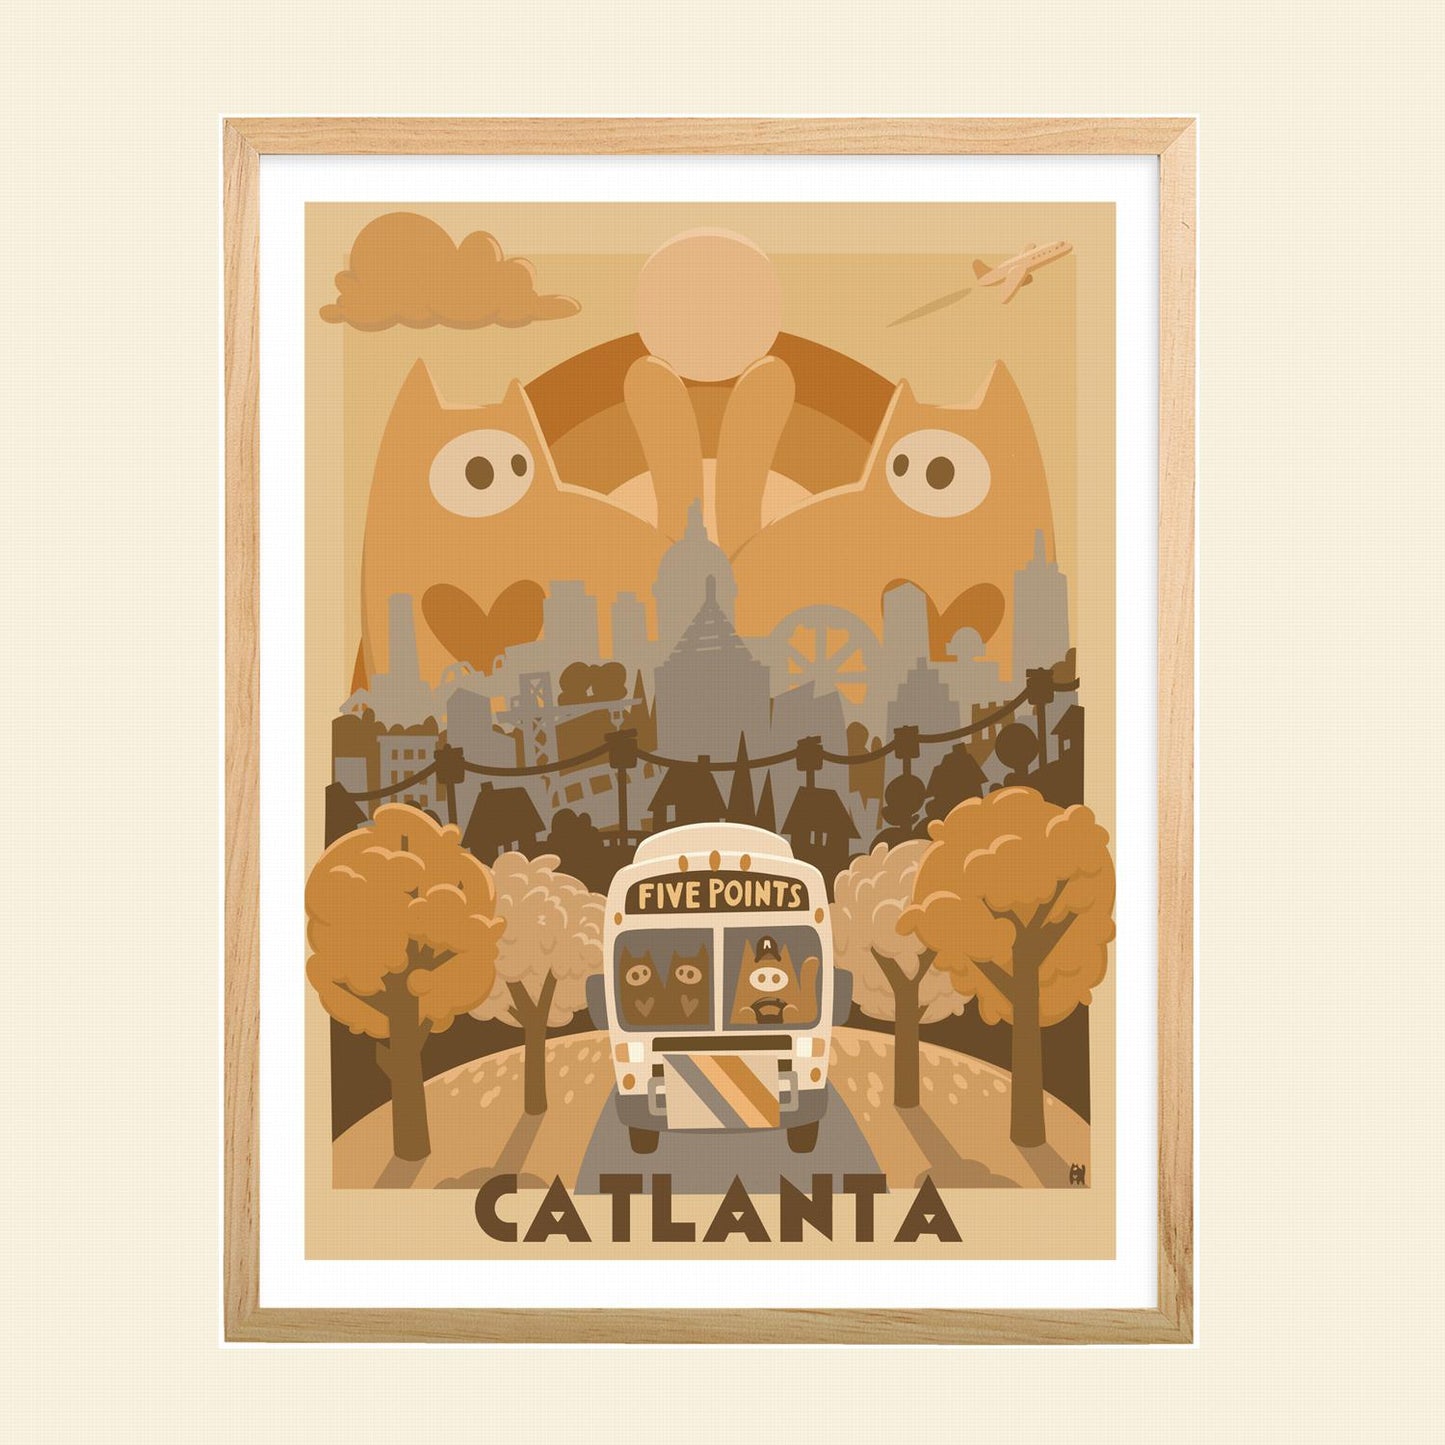 Catlanta - "Kitty City"